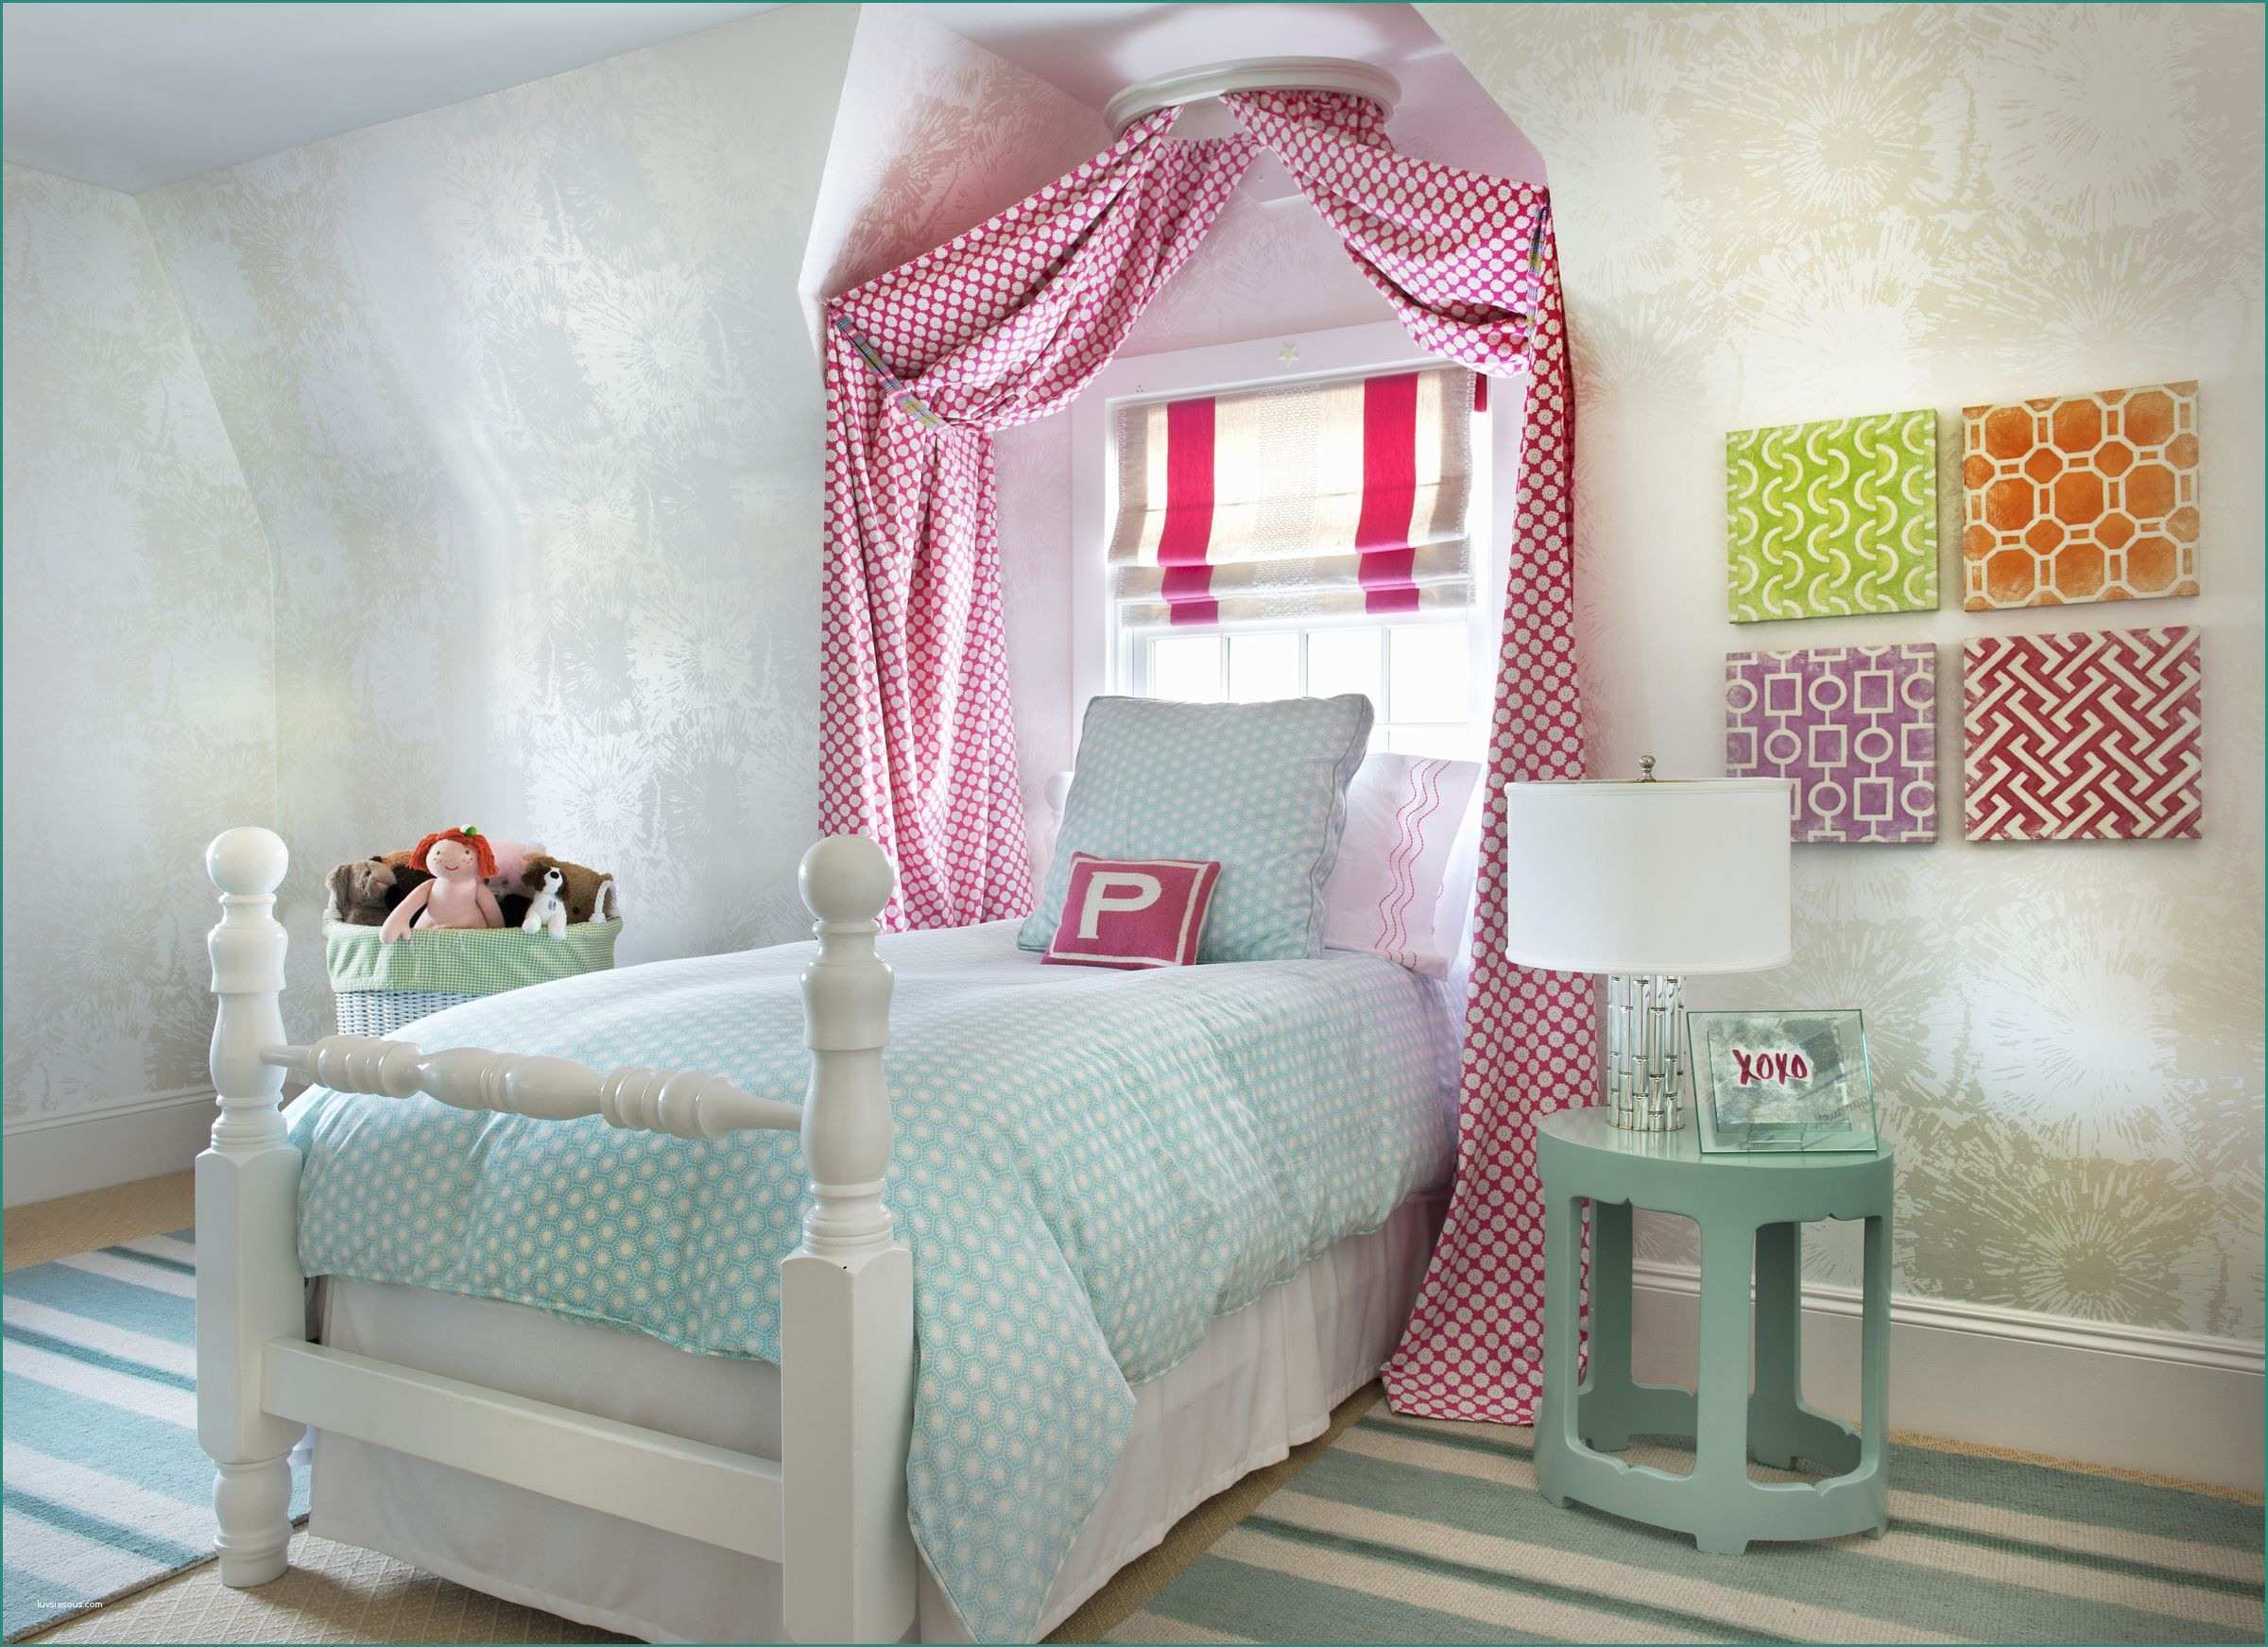 Camere Per Ragazze Da sogno E Child S Bedroom In Aqua and Pink with Fireworks Metallic Wallpaper